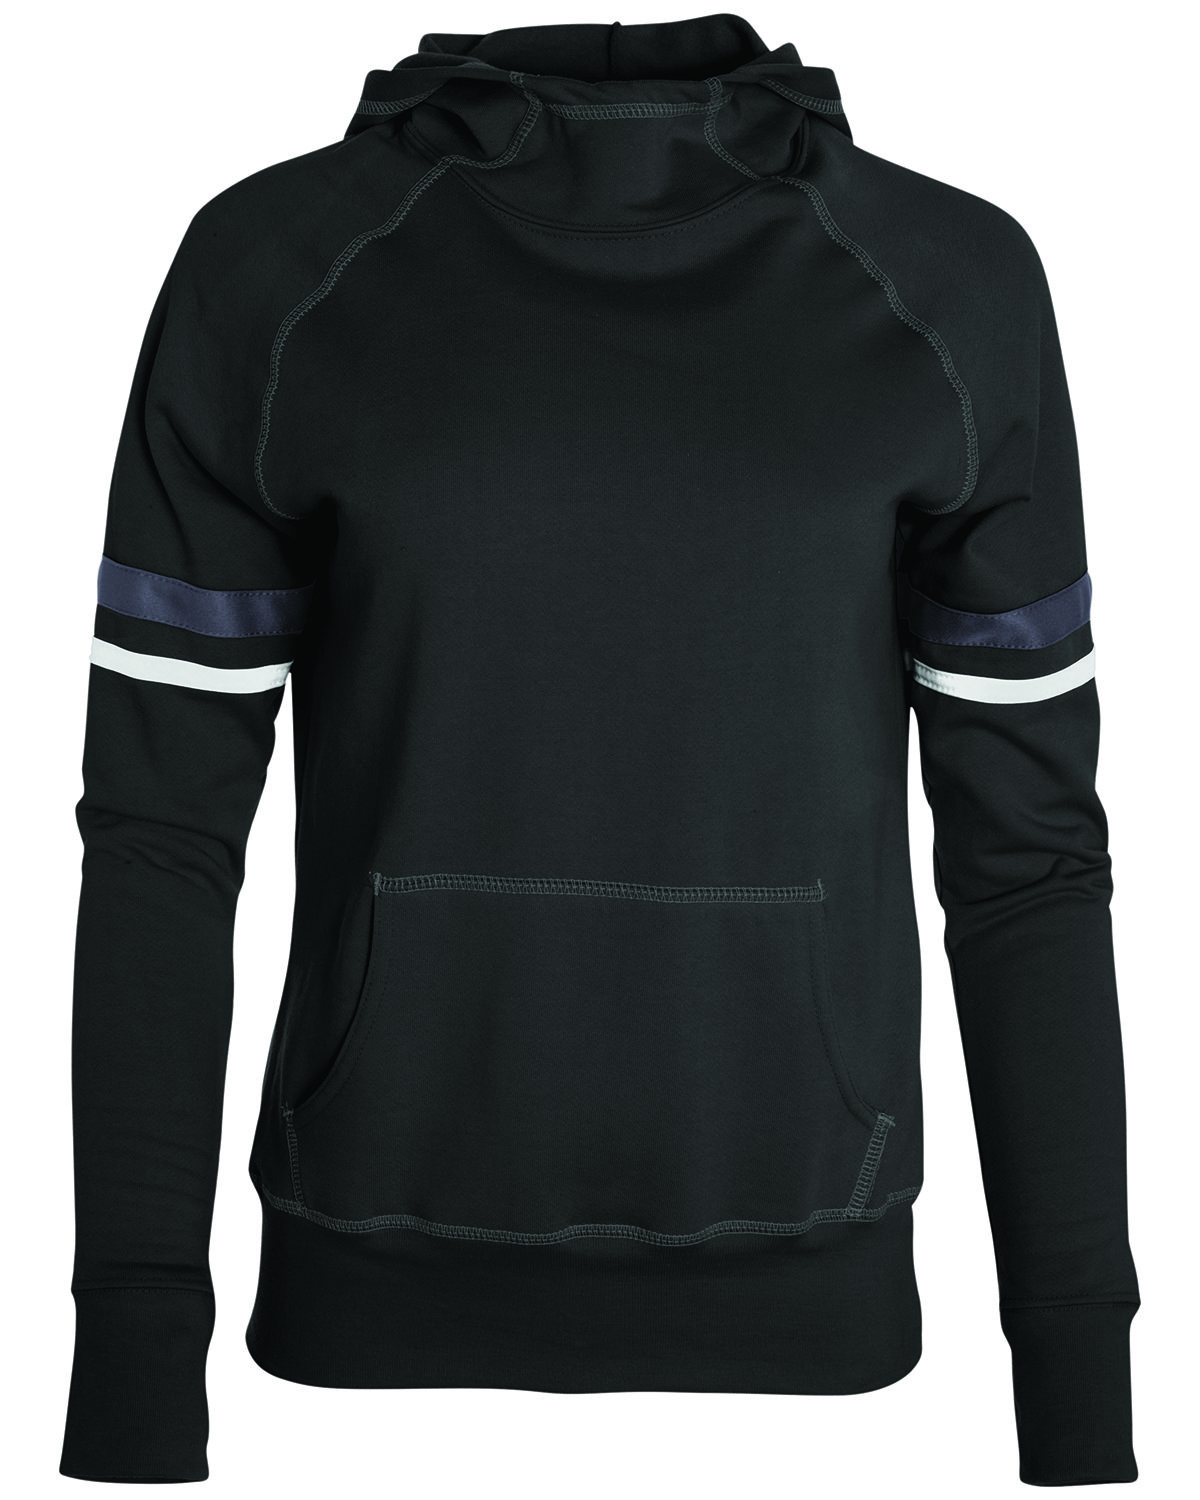 Girls Spry Hooded Sweatshirt-Augusta Sportswear